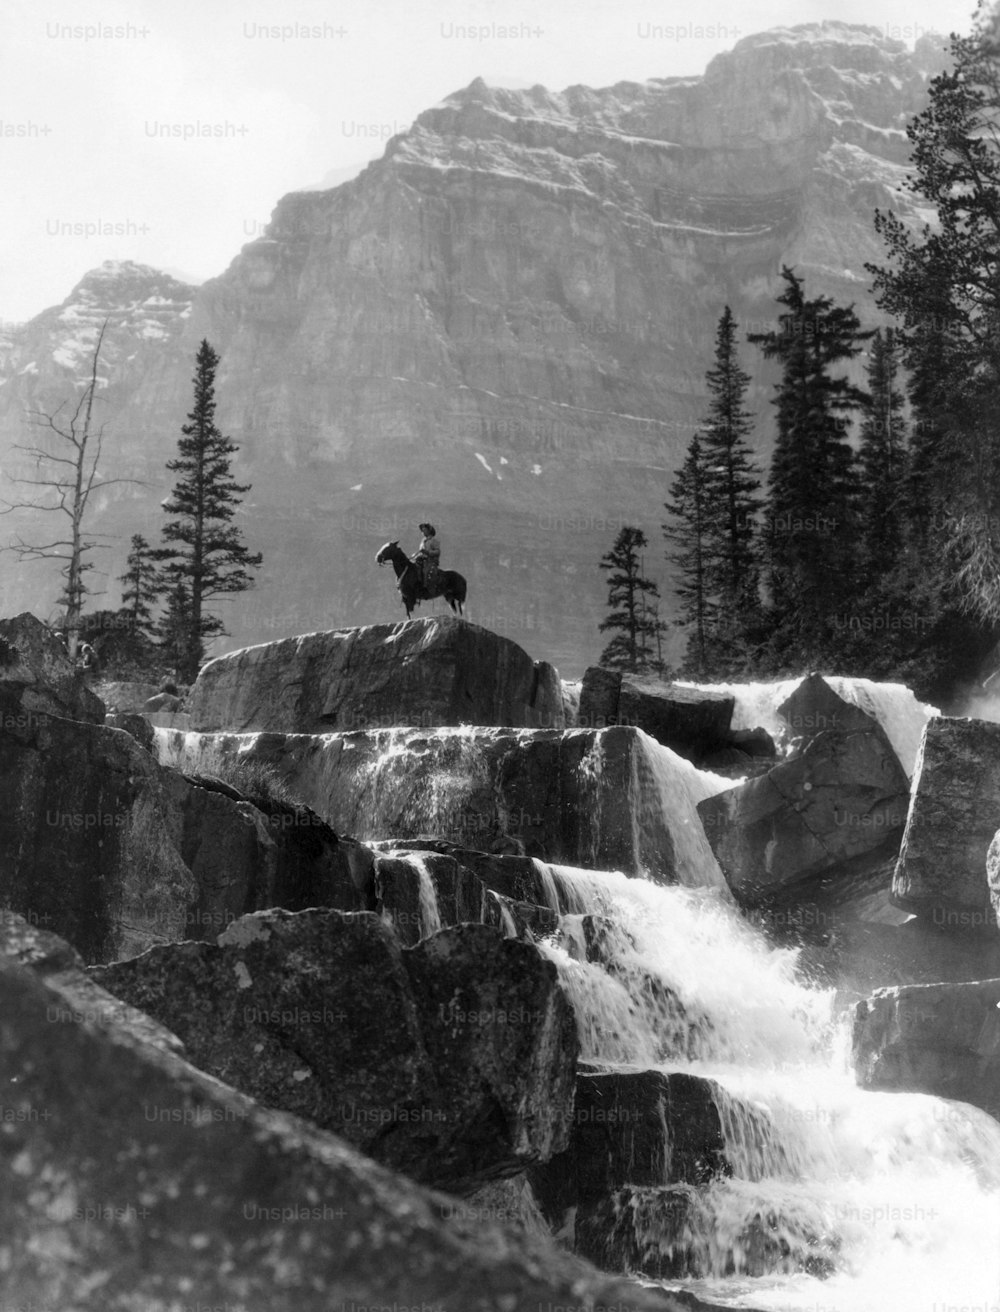 STATI UNITI - Circa 1940s: Cascata verticale Uomo sul cavallo sullo sfondo Giants Steps Paradise Valley Alberta Canada Cowboy Mountains Frontier Alone Remote.